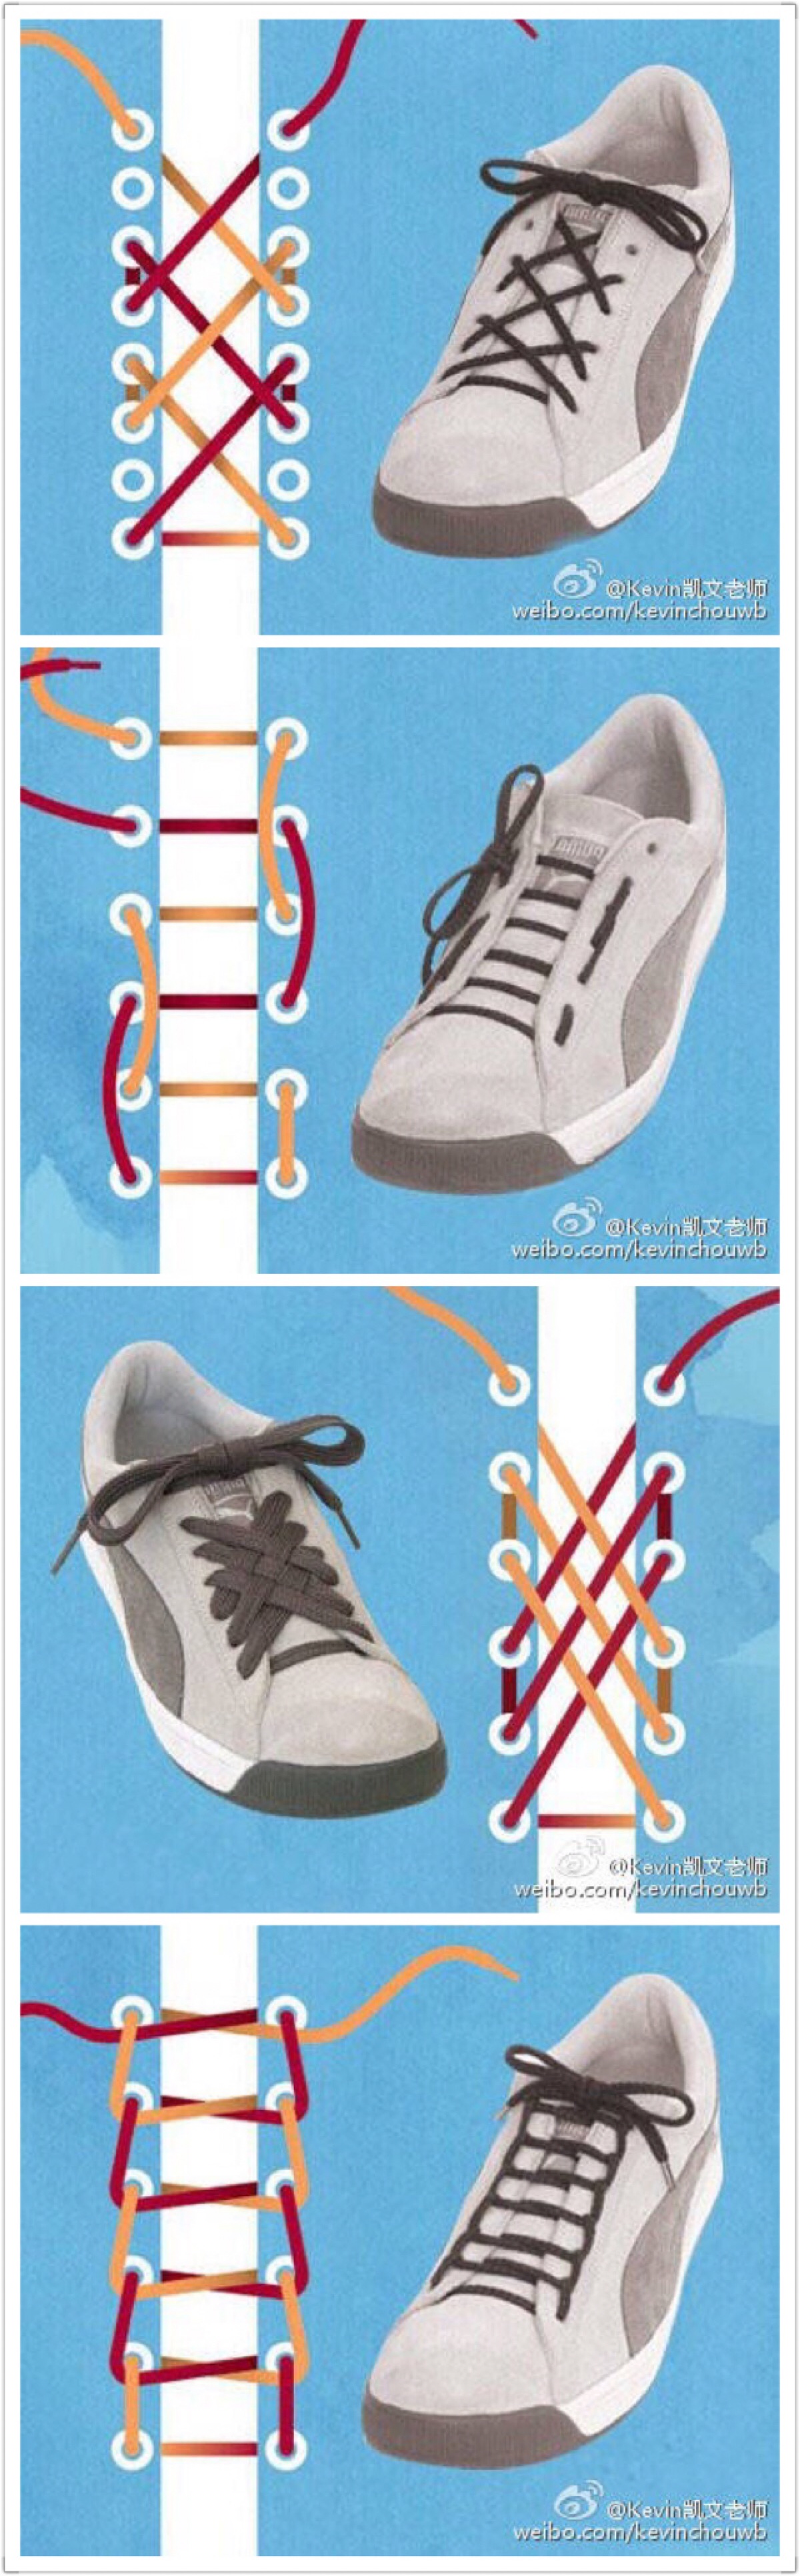 【系鞋带】学会这几种绑鞋带的方法 小白鞋可以穿得更带感(2)_伊秀动漫|yxlady.com